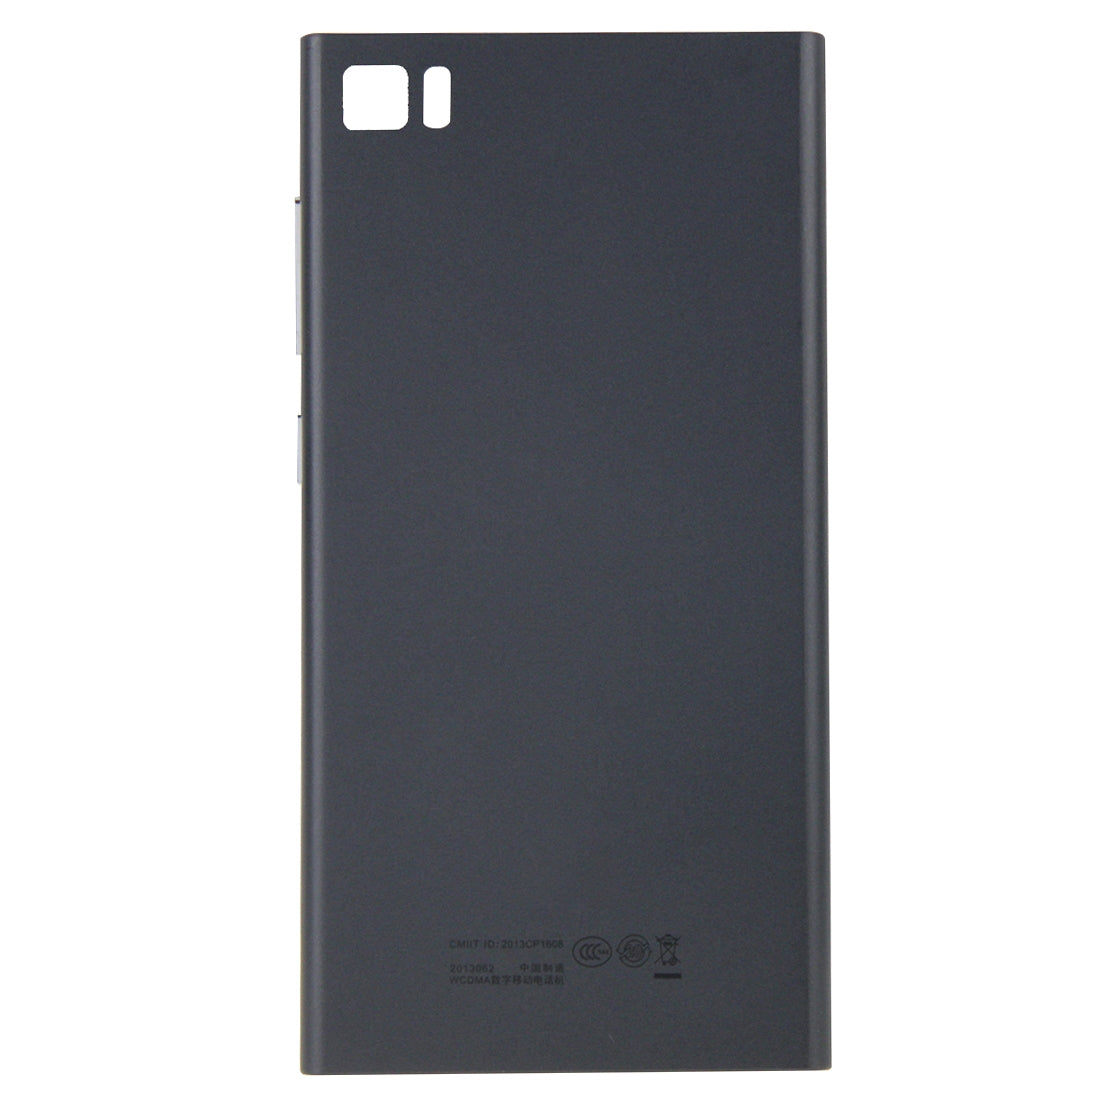 Cache Batterie Cache Arrière Xiaomi Mi 3.WCDMA Noir